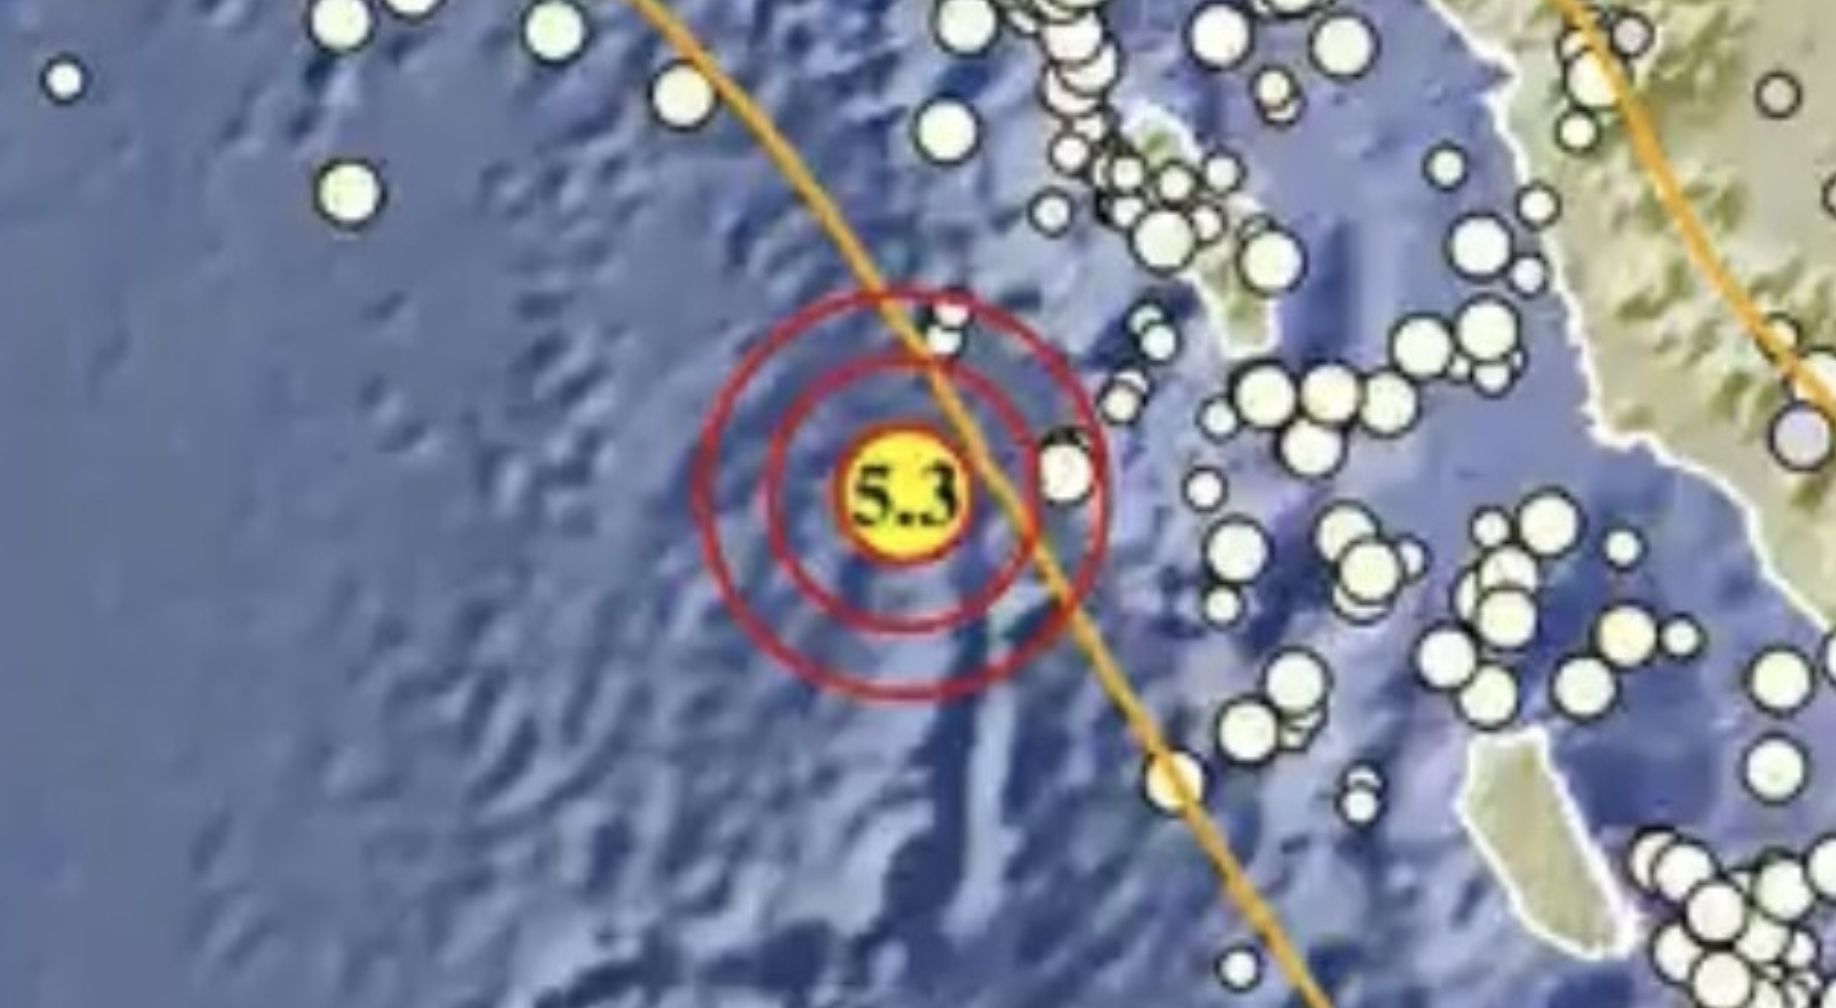 Gempa susulan dengan parameter M5.3 di lepas pantai sebelah barat Kabupaten Nias Barat, Sumatera Utara